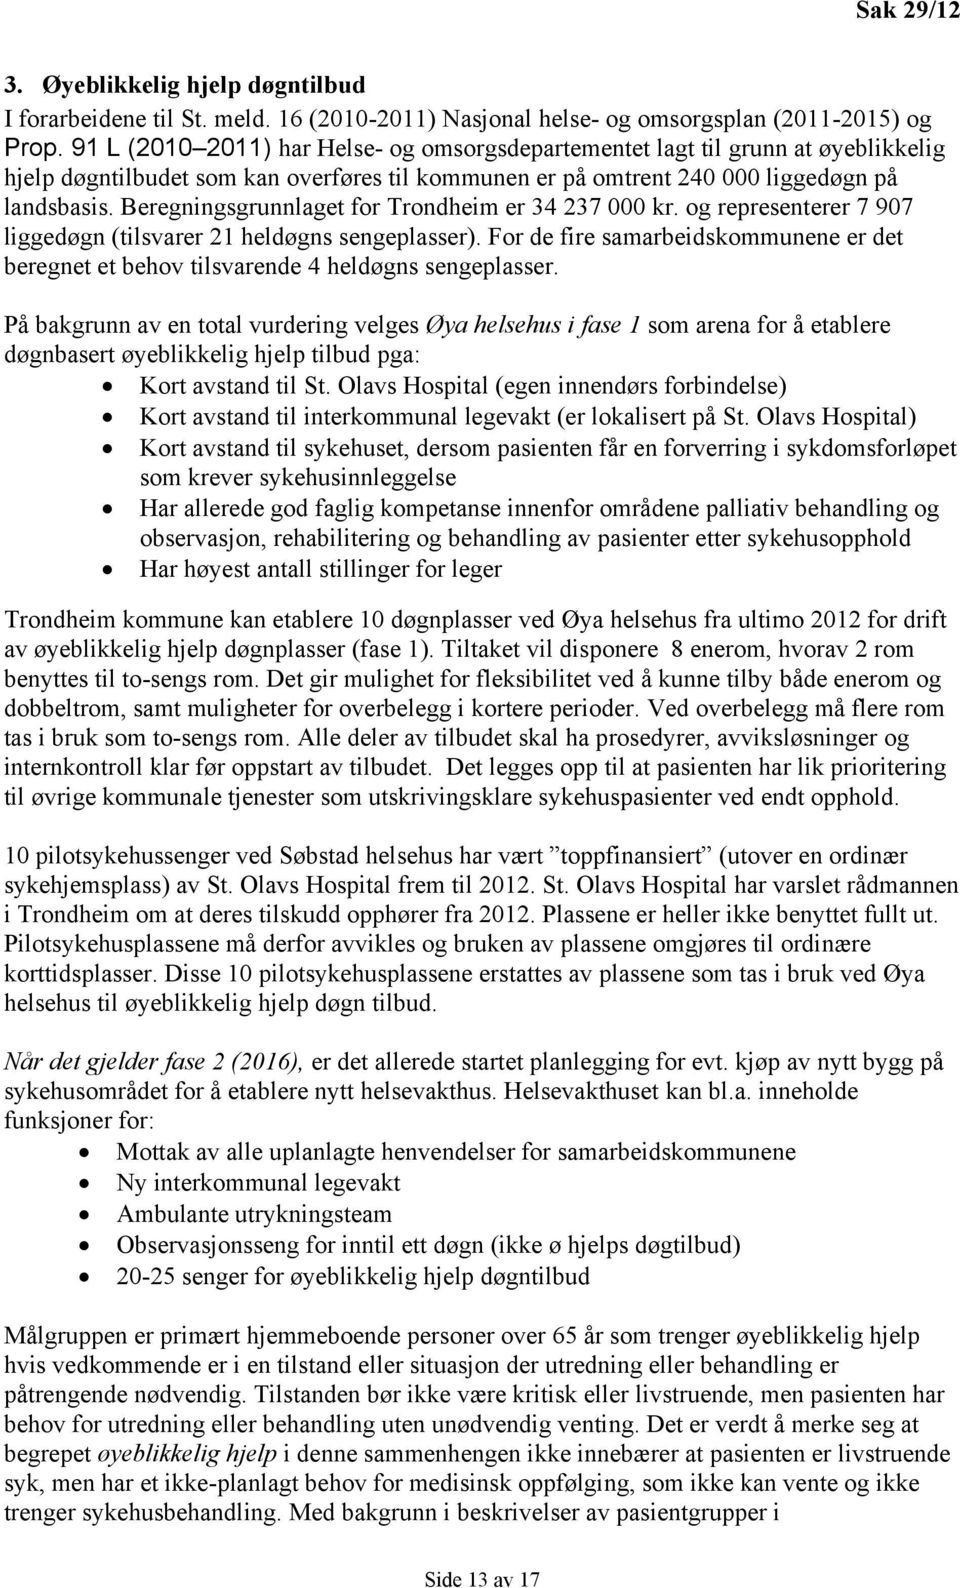 Beregningsgrunnlaget for Trondheim er 34 237 000 kr. og representerer 7 907 liggedøgn (tilsvarer 21 heldøgns sengeplasser).